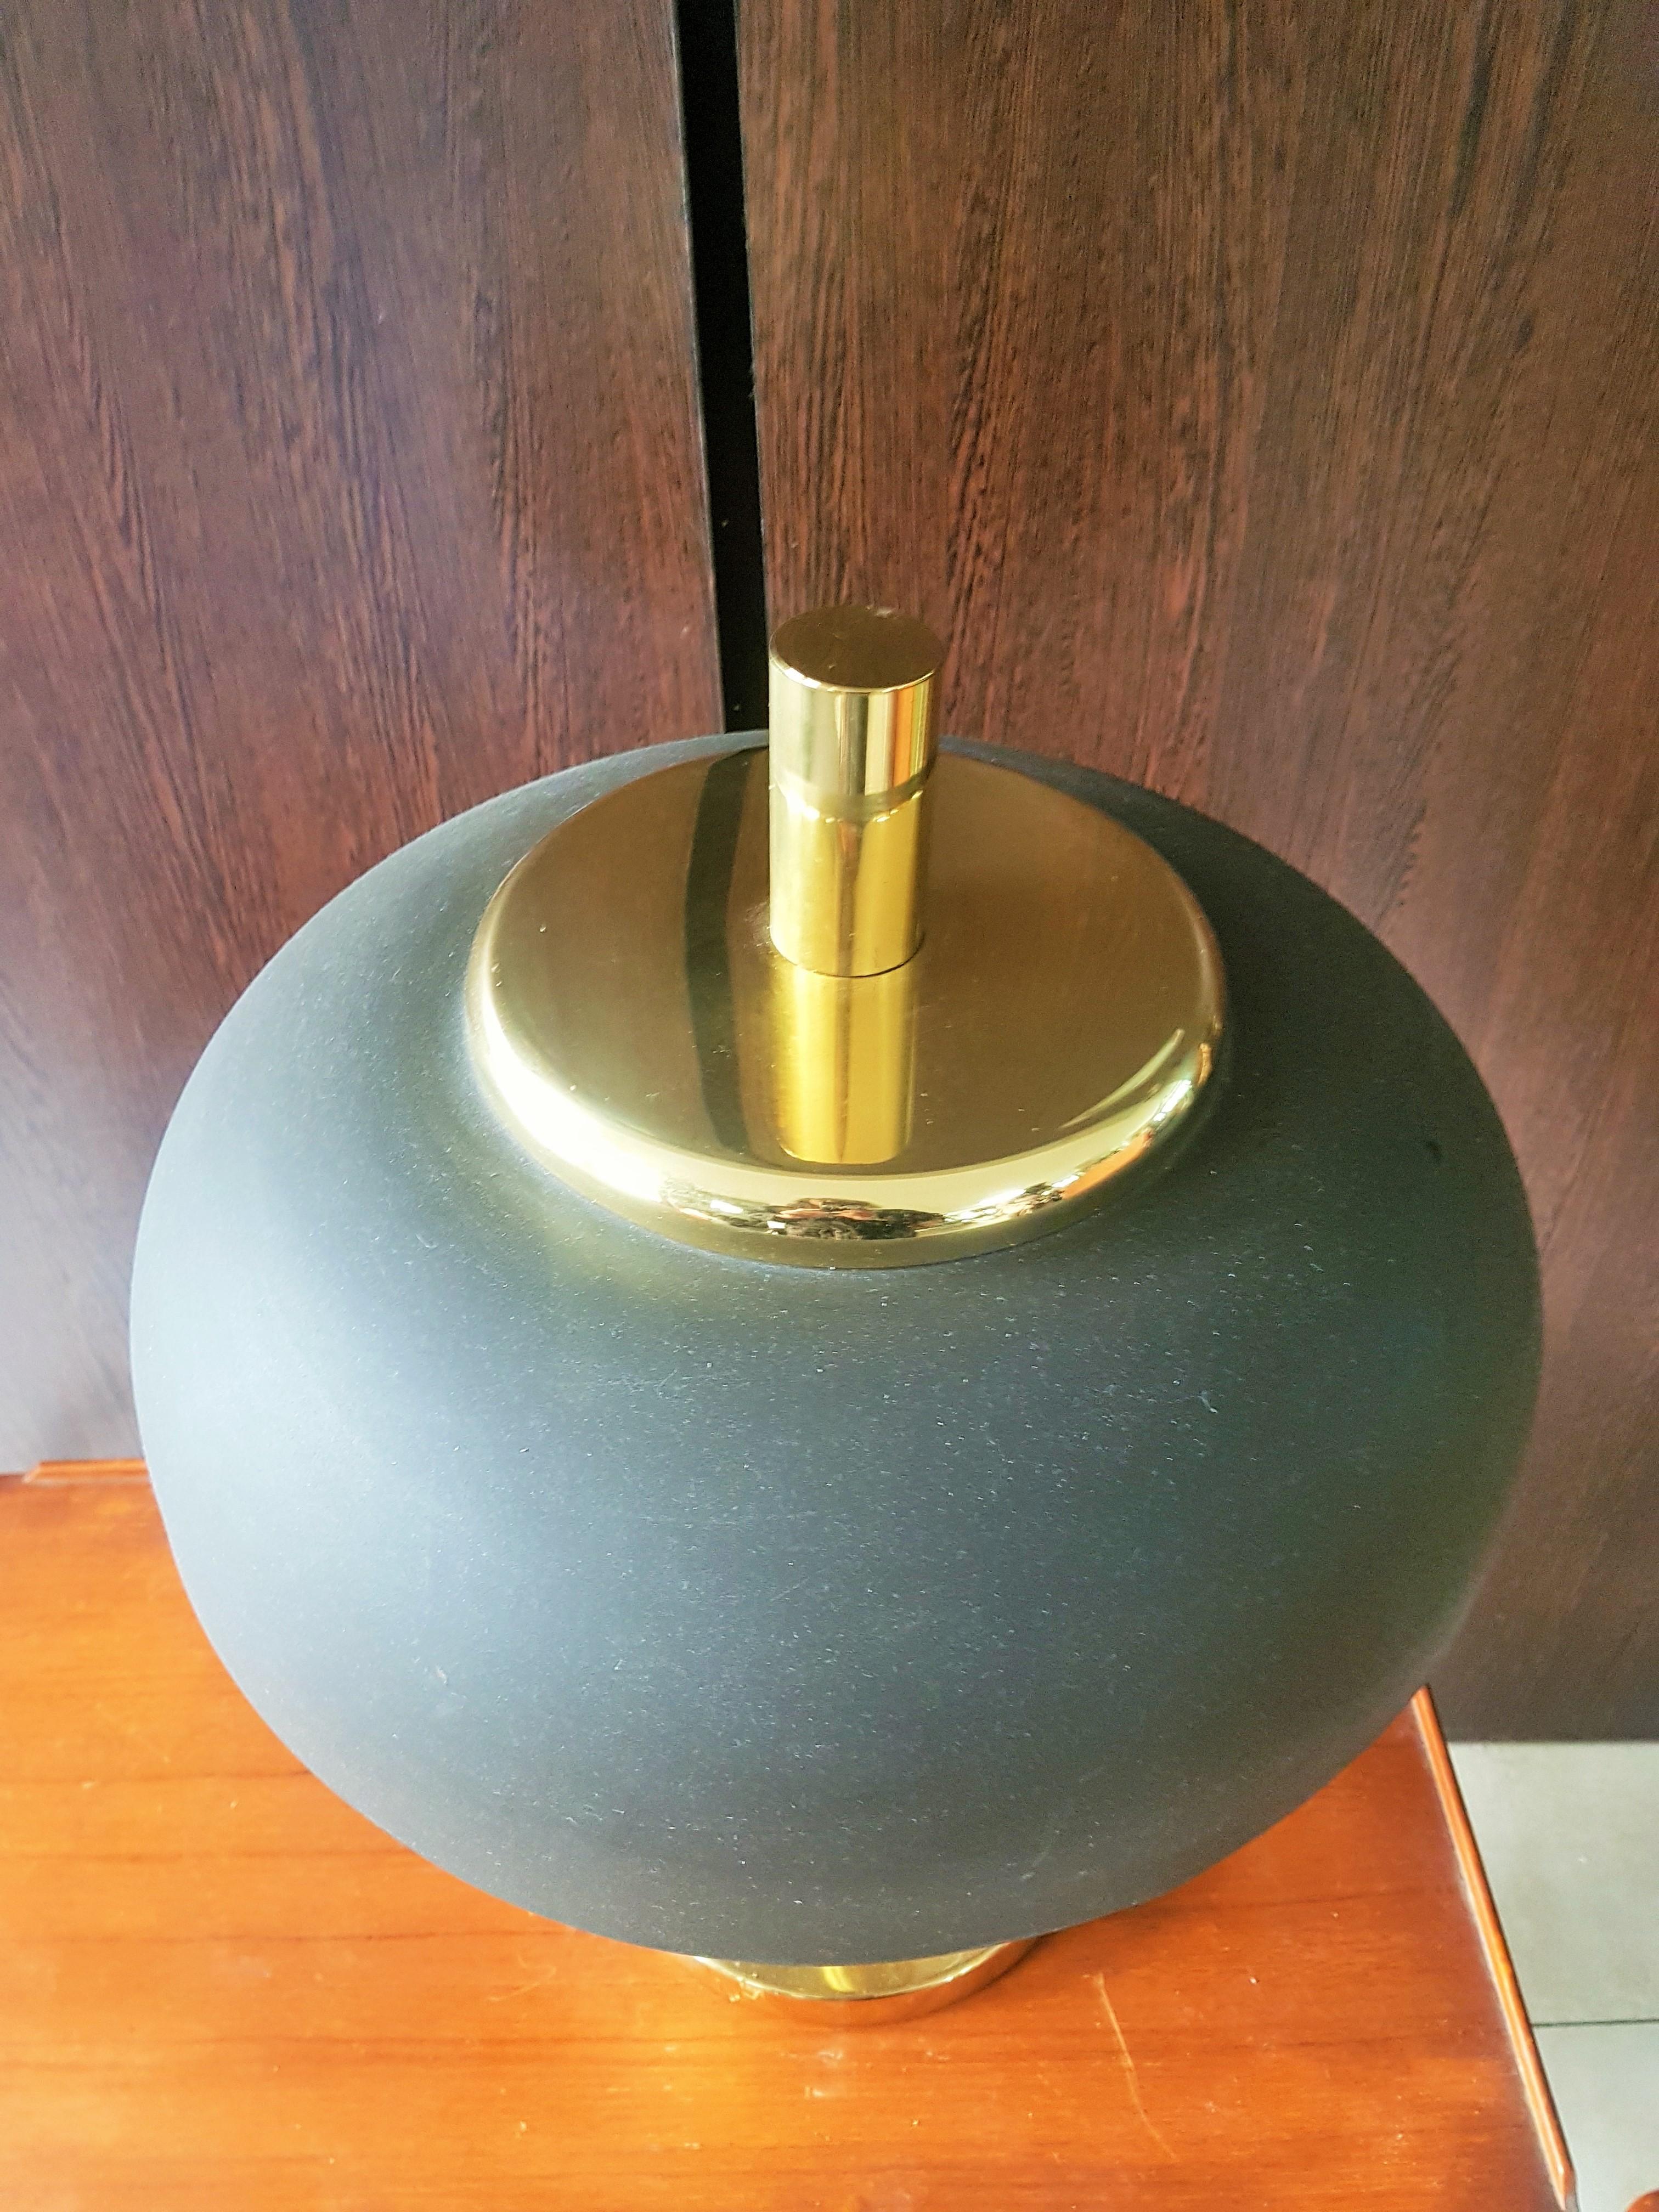 Messingfuß-Tischlampe aus der Mitte des Jahrhunderts, brauner Metallschirm, Deutschland, 1960er Jahre b Hillebrand.

Guter Vintage-Zustand. Zwei e27-Fassungen.